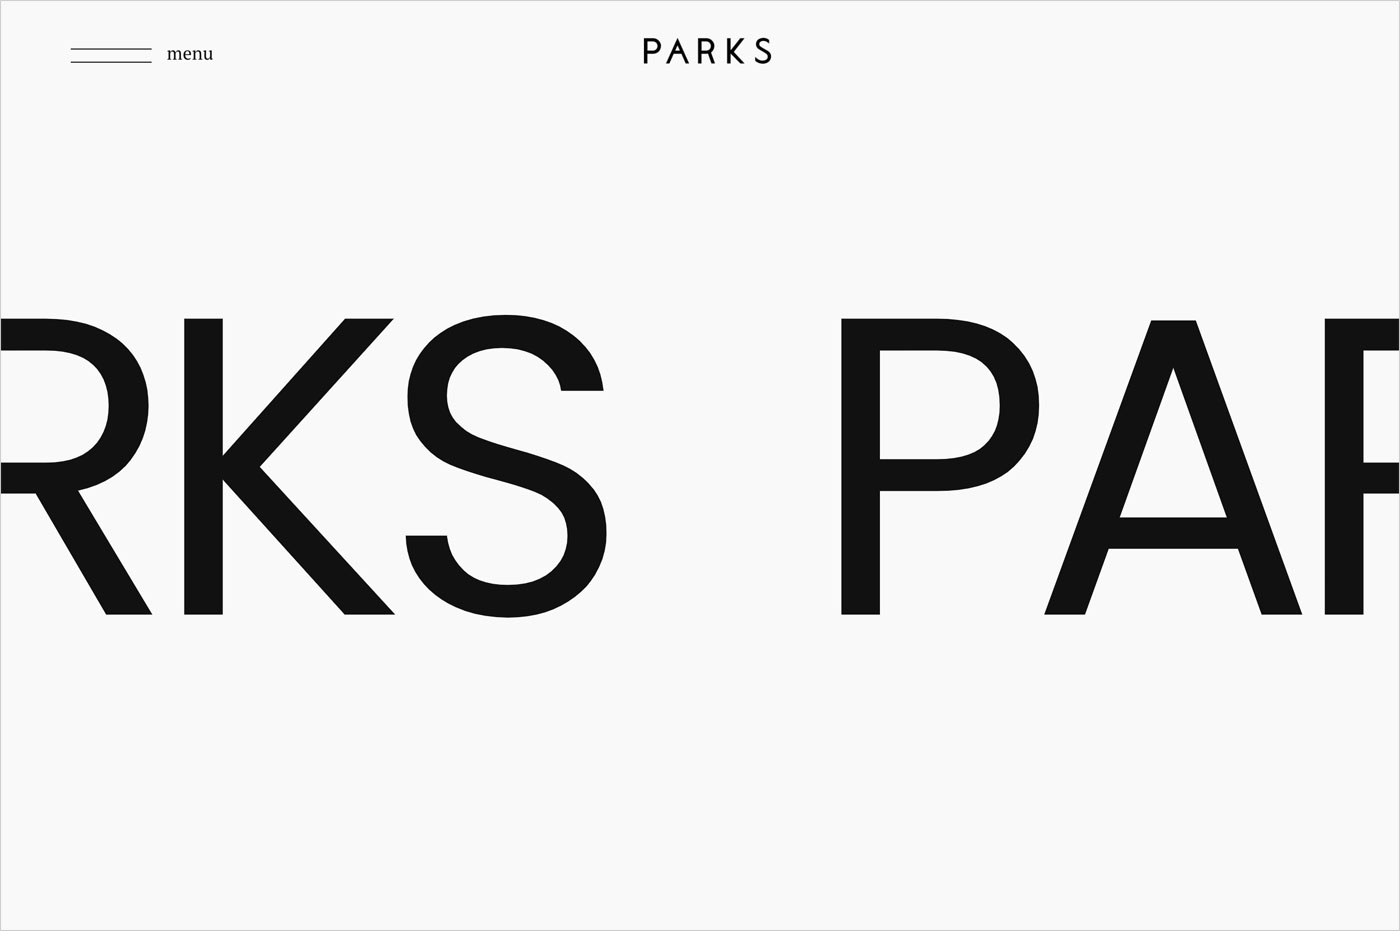 PARKS MANAGEMENTウェブサイトの画面キャプチャ画像